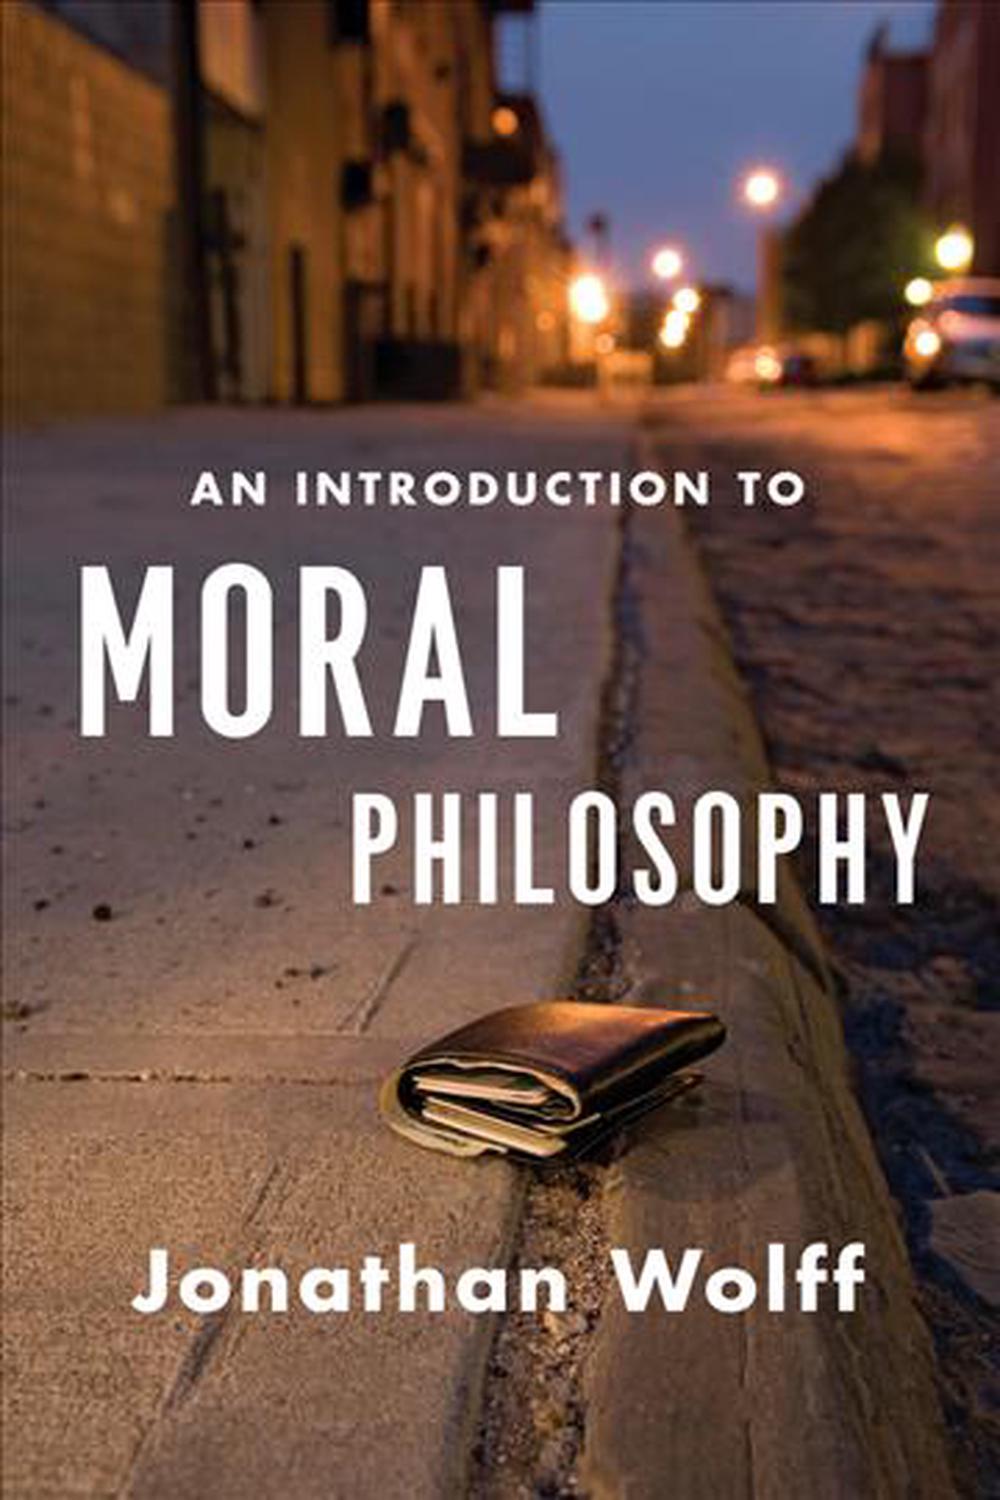 moral philosophy essay titles